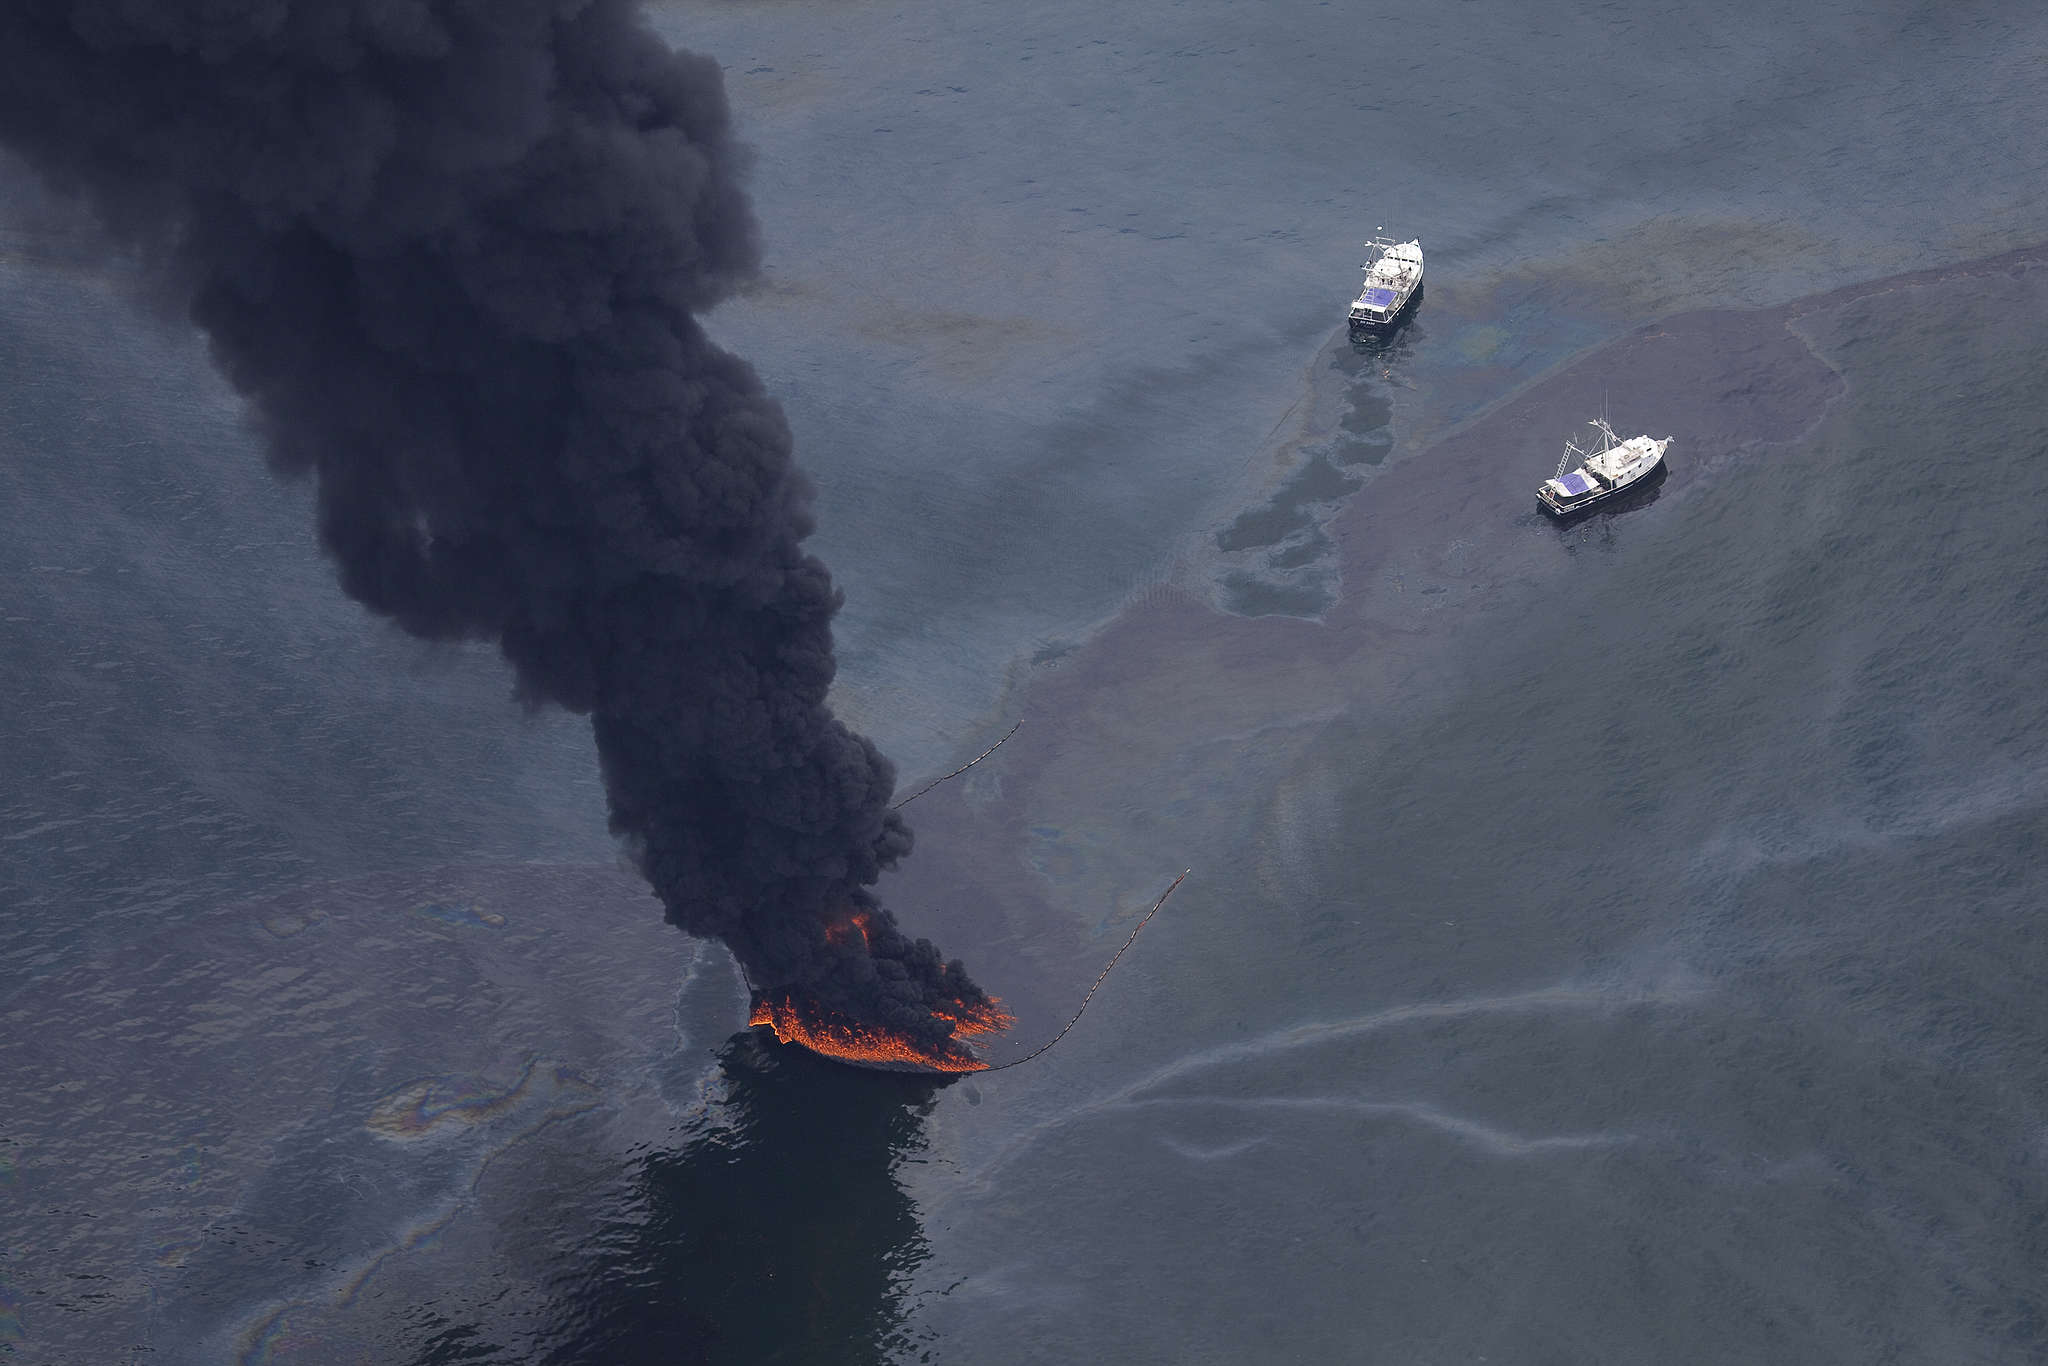 Аварии с загрязнением окружающей среды. Разлив нефти в мексиканском заливе 2010. Deepwater Horizon разлив нефти. Взрыв нефтяной платформы Deepwater Horizon 2010. Катастрофа Deepwater Horizon в мексиканском заливе.